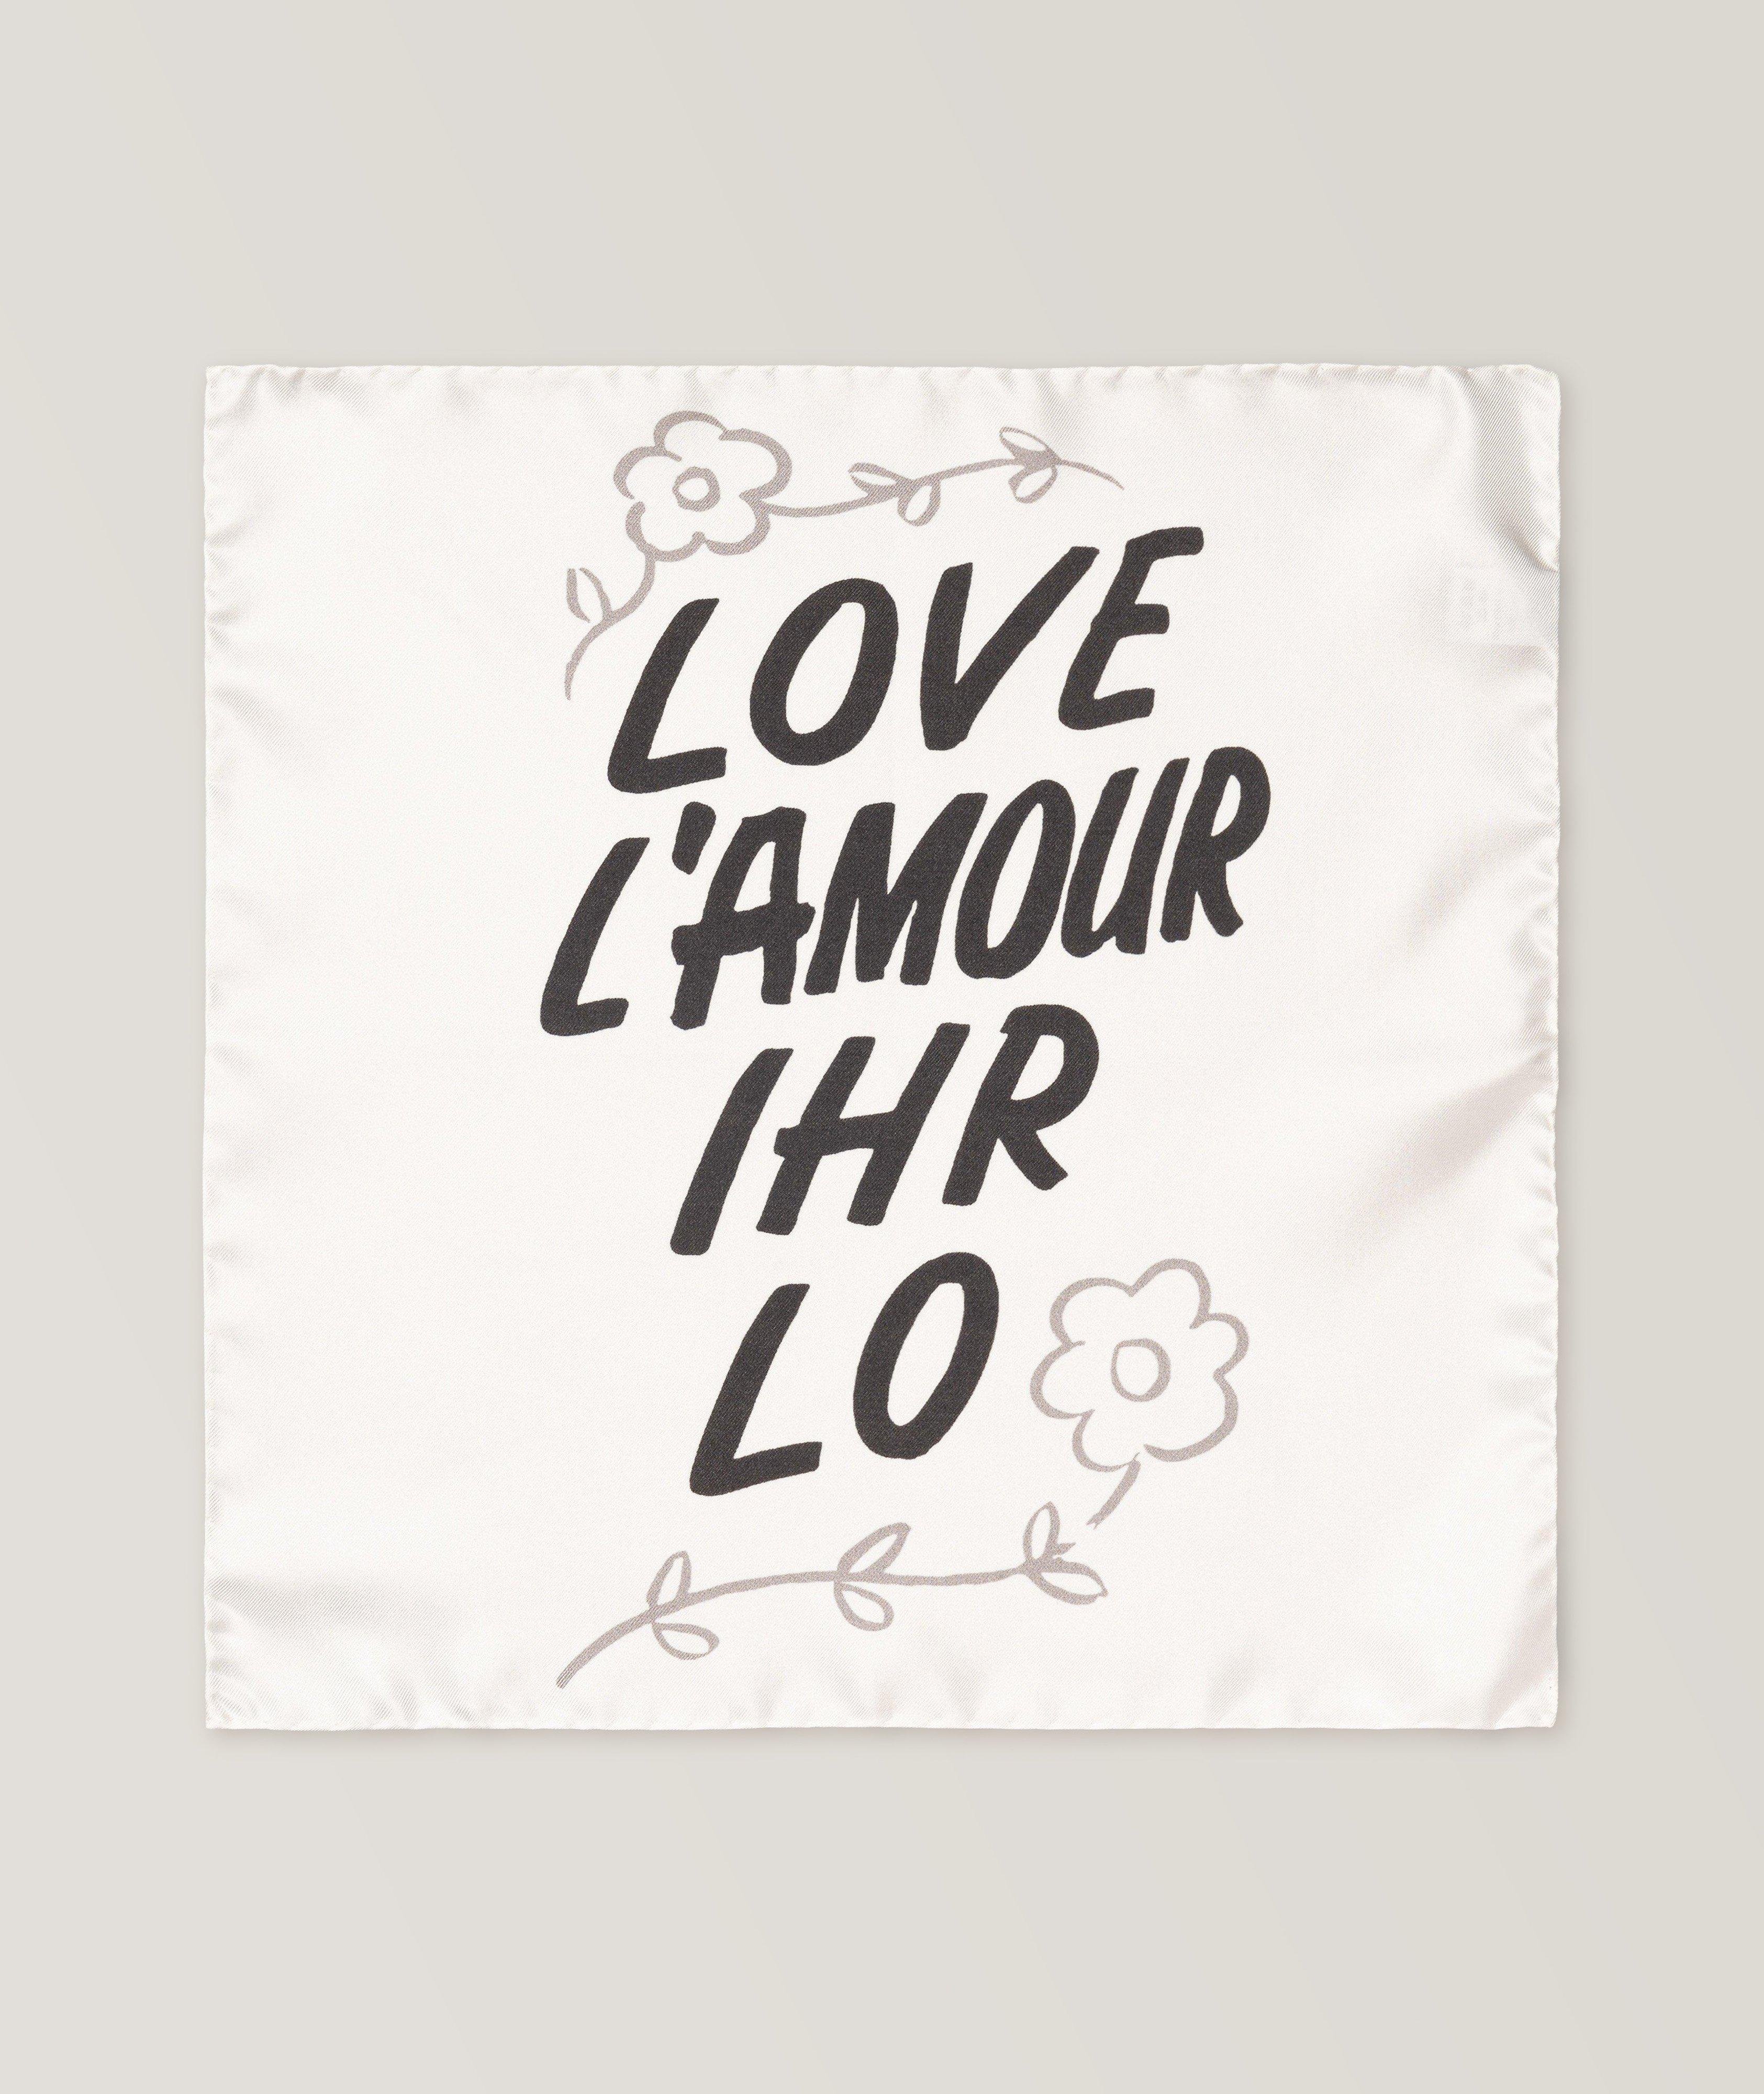 Mouchoir de poche « Love L’amour Ihr Lo », collection The Beatles image 0